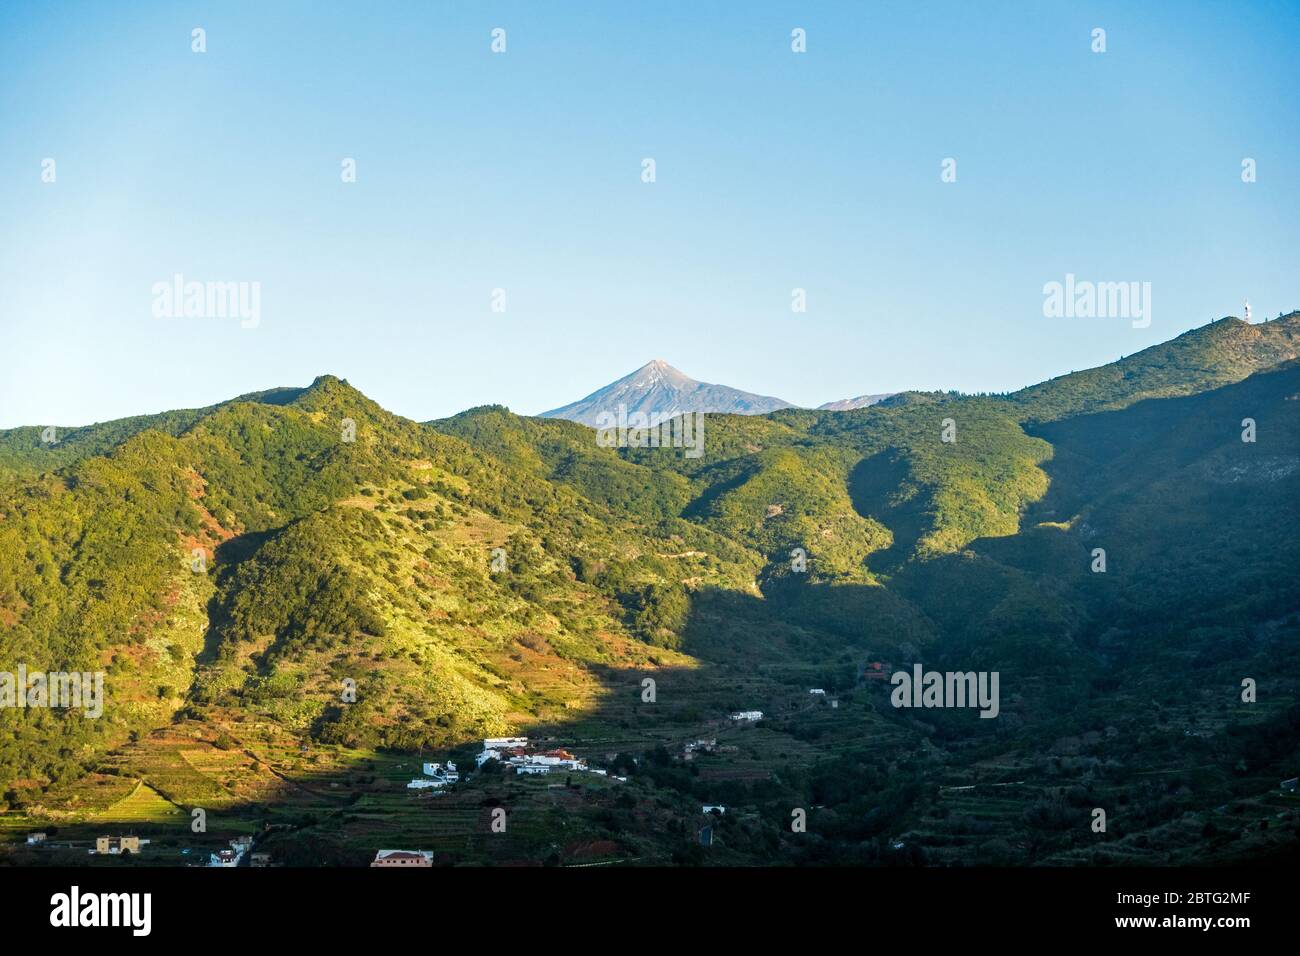 View of the Teno mountains ( Macizo de Teno) from viewpoint Mirador Altos de Baracan, Tenerife, Spain Stock Photo